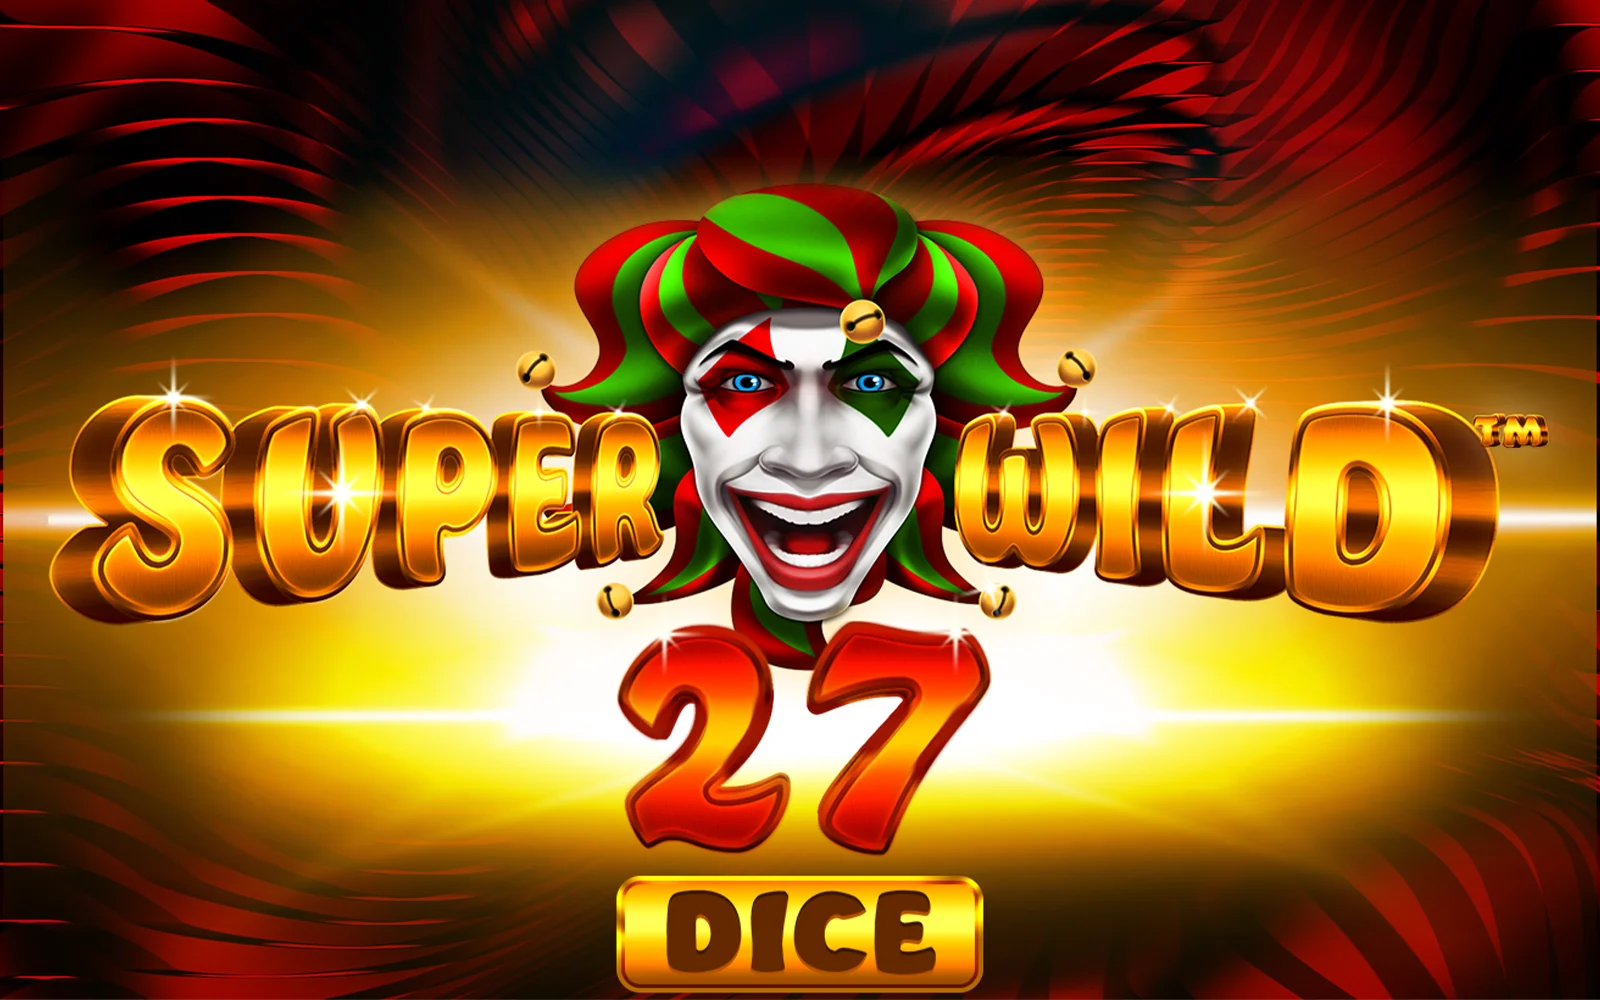 Zagraj w Super Wild 27 Dice w kasynie online Starcasino.be